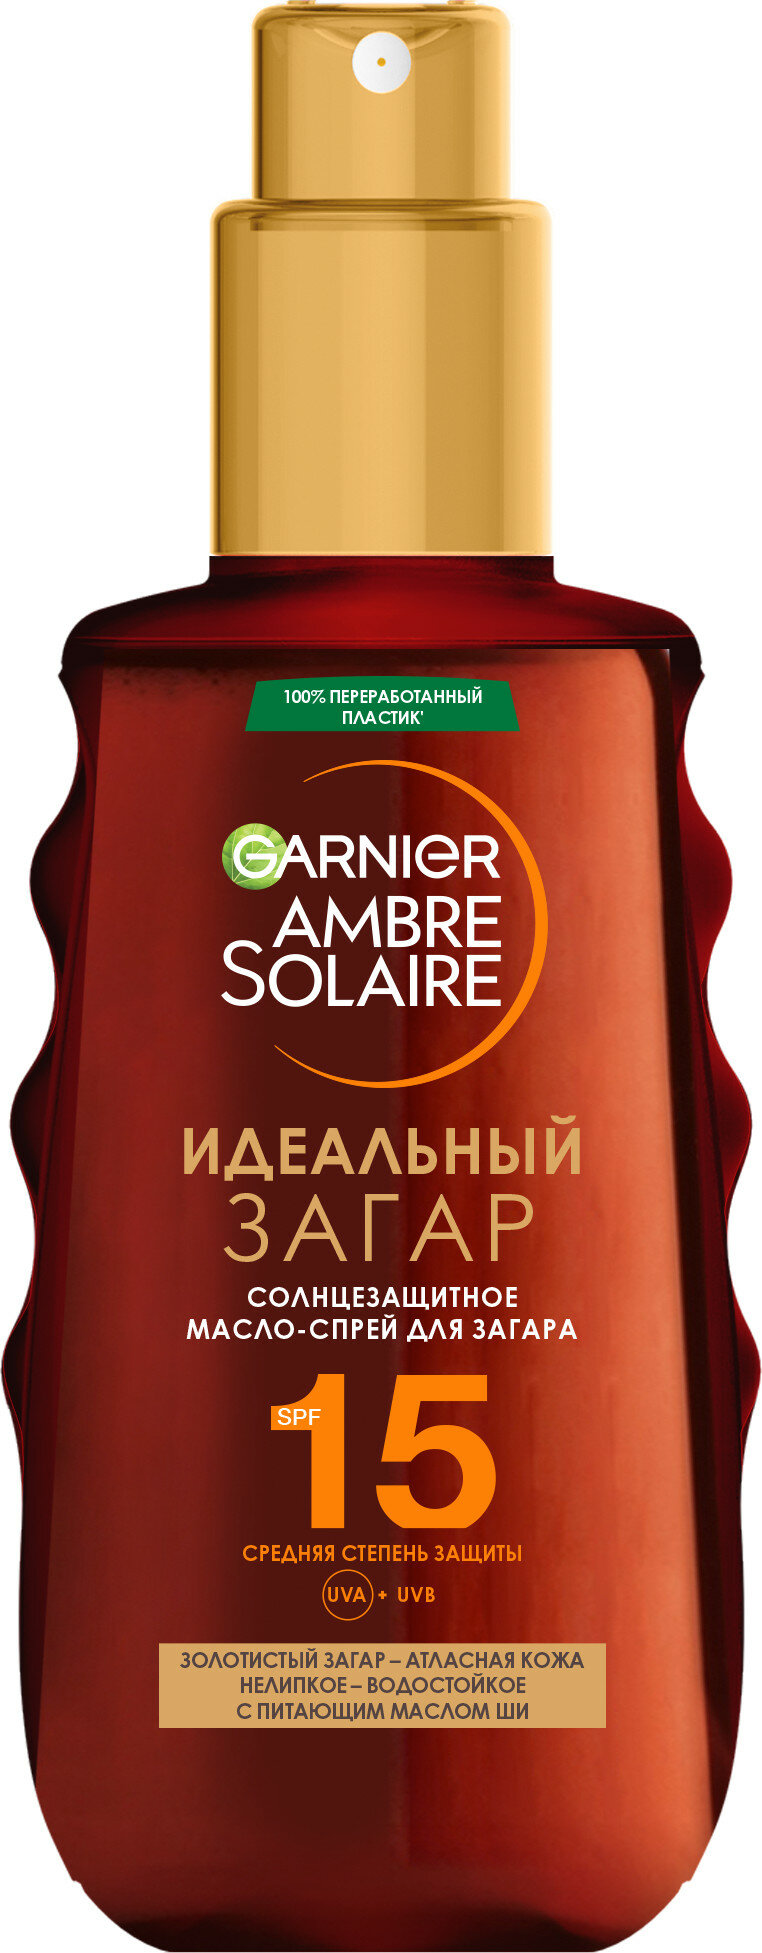 GARNIER Ambre Solaire Идеальный загар Солнцезащитное масло-спрей для загара с маслом Карите SPF 15 SPF 15, 150 мл